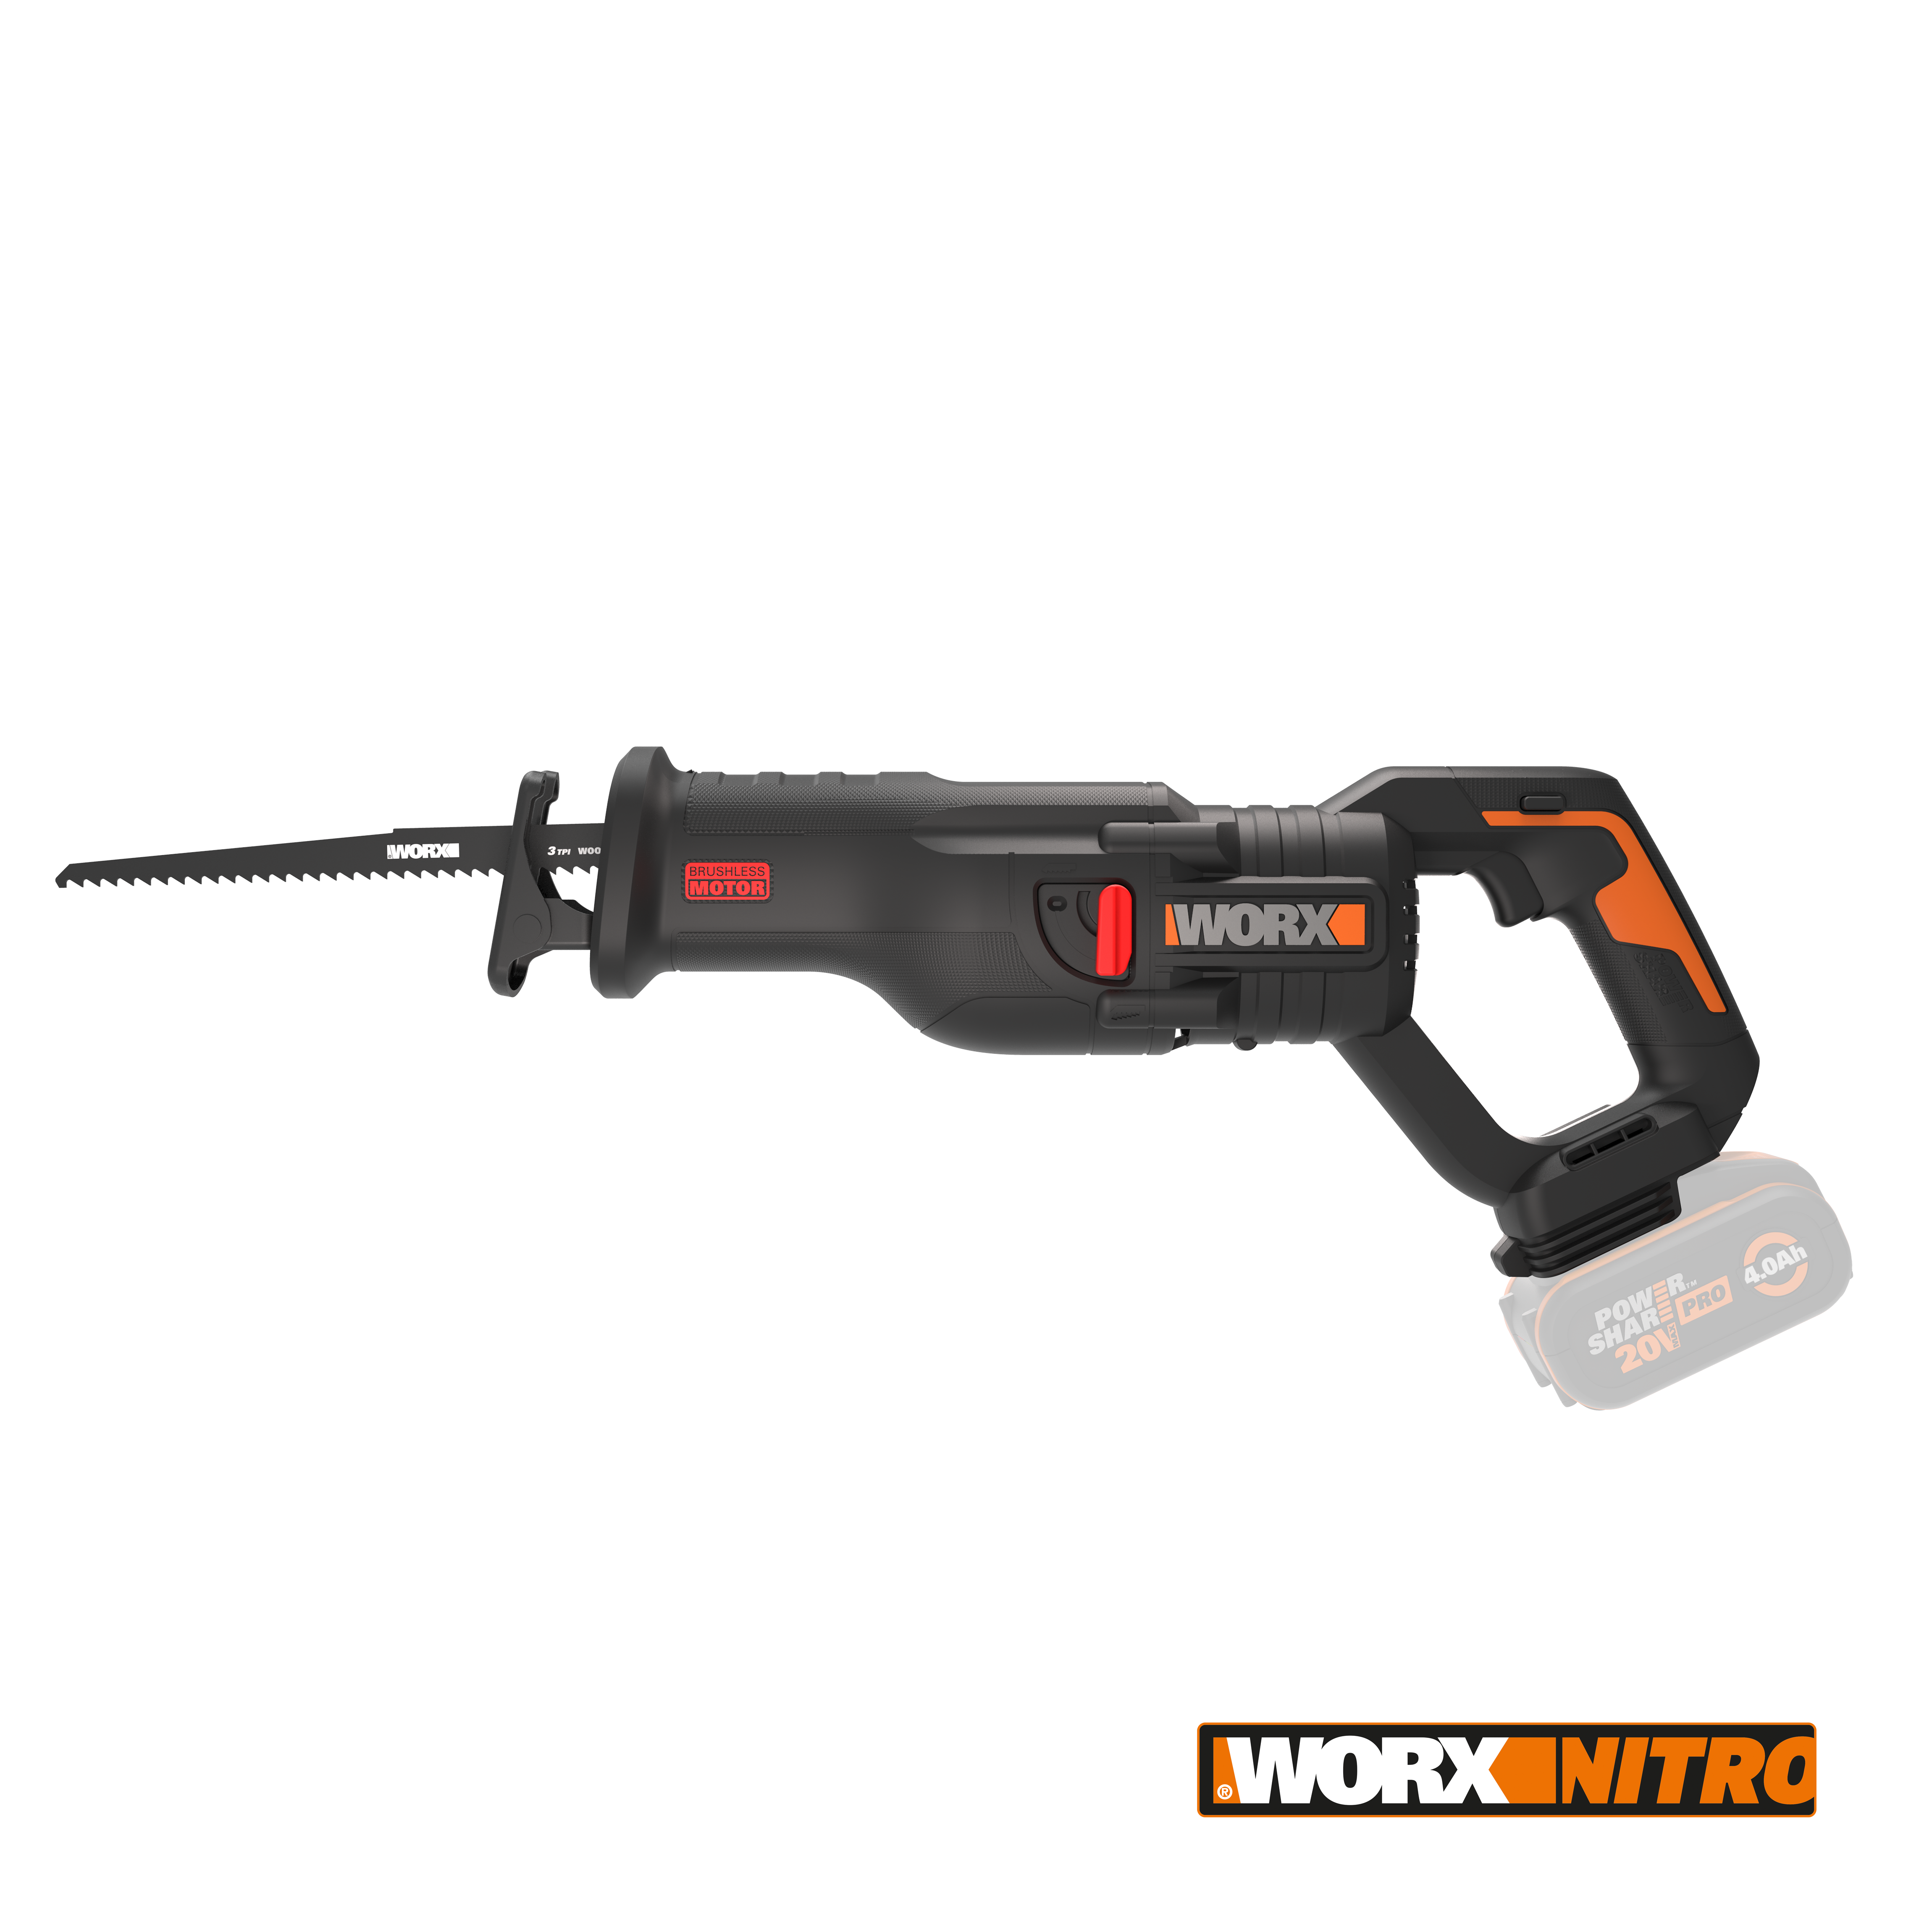 20V cordless brushless reciprocating saw - tool only - Worx UK